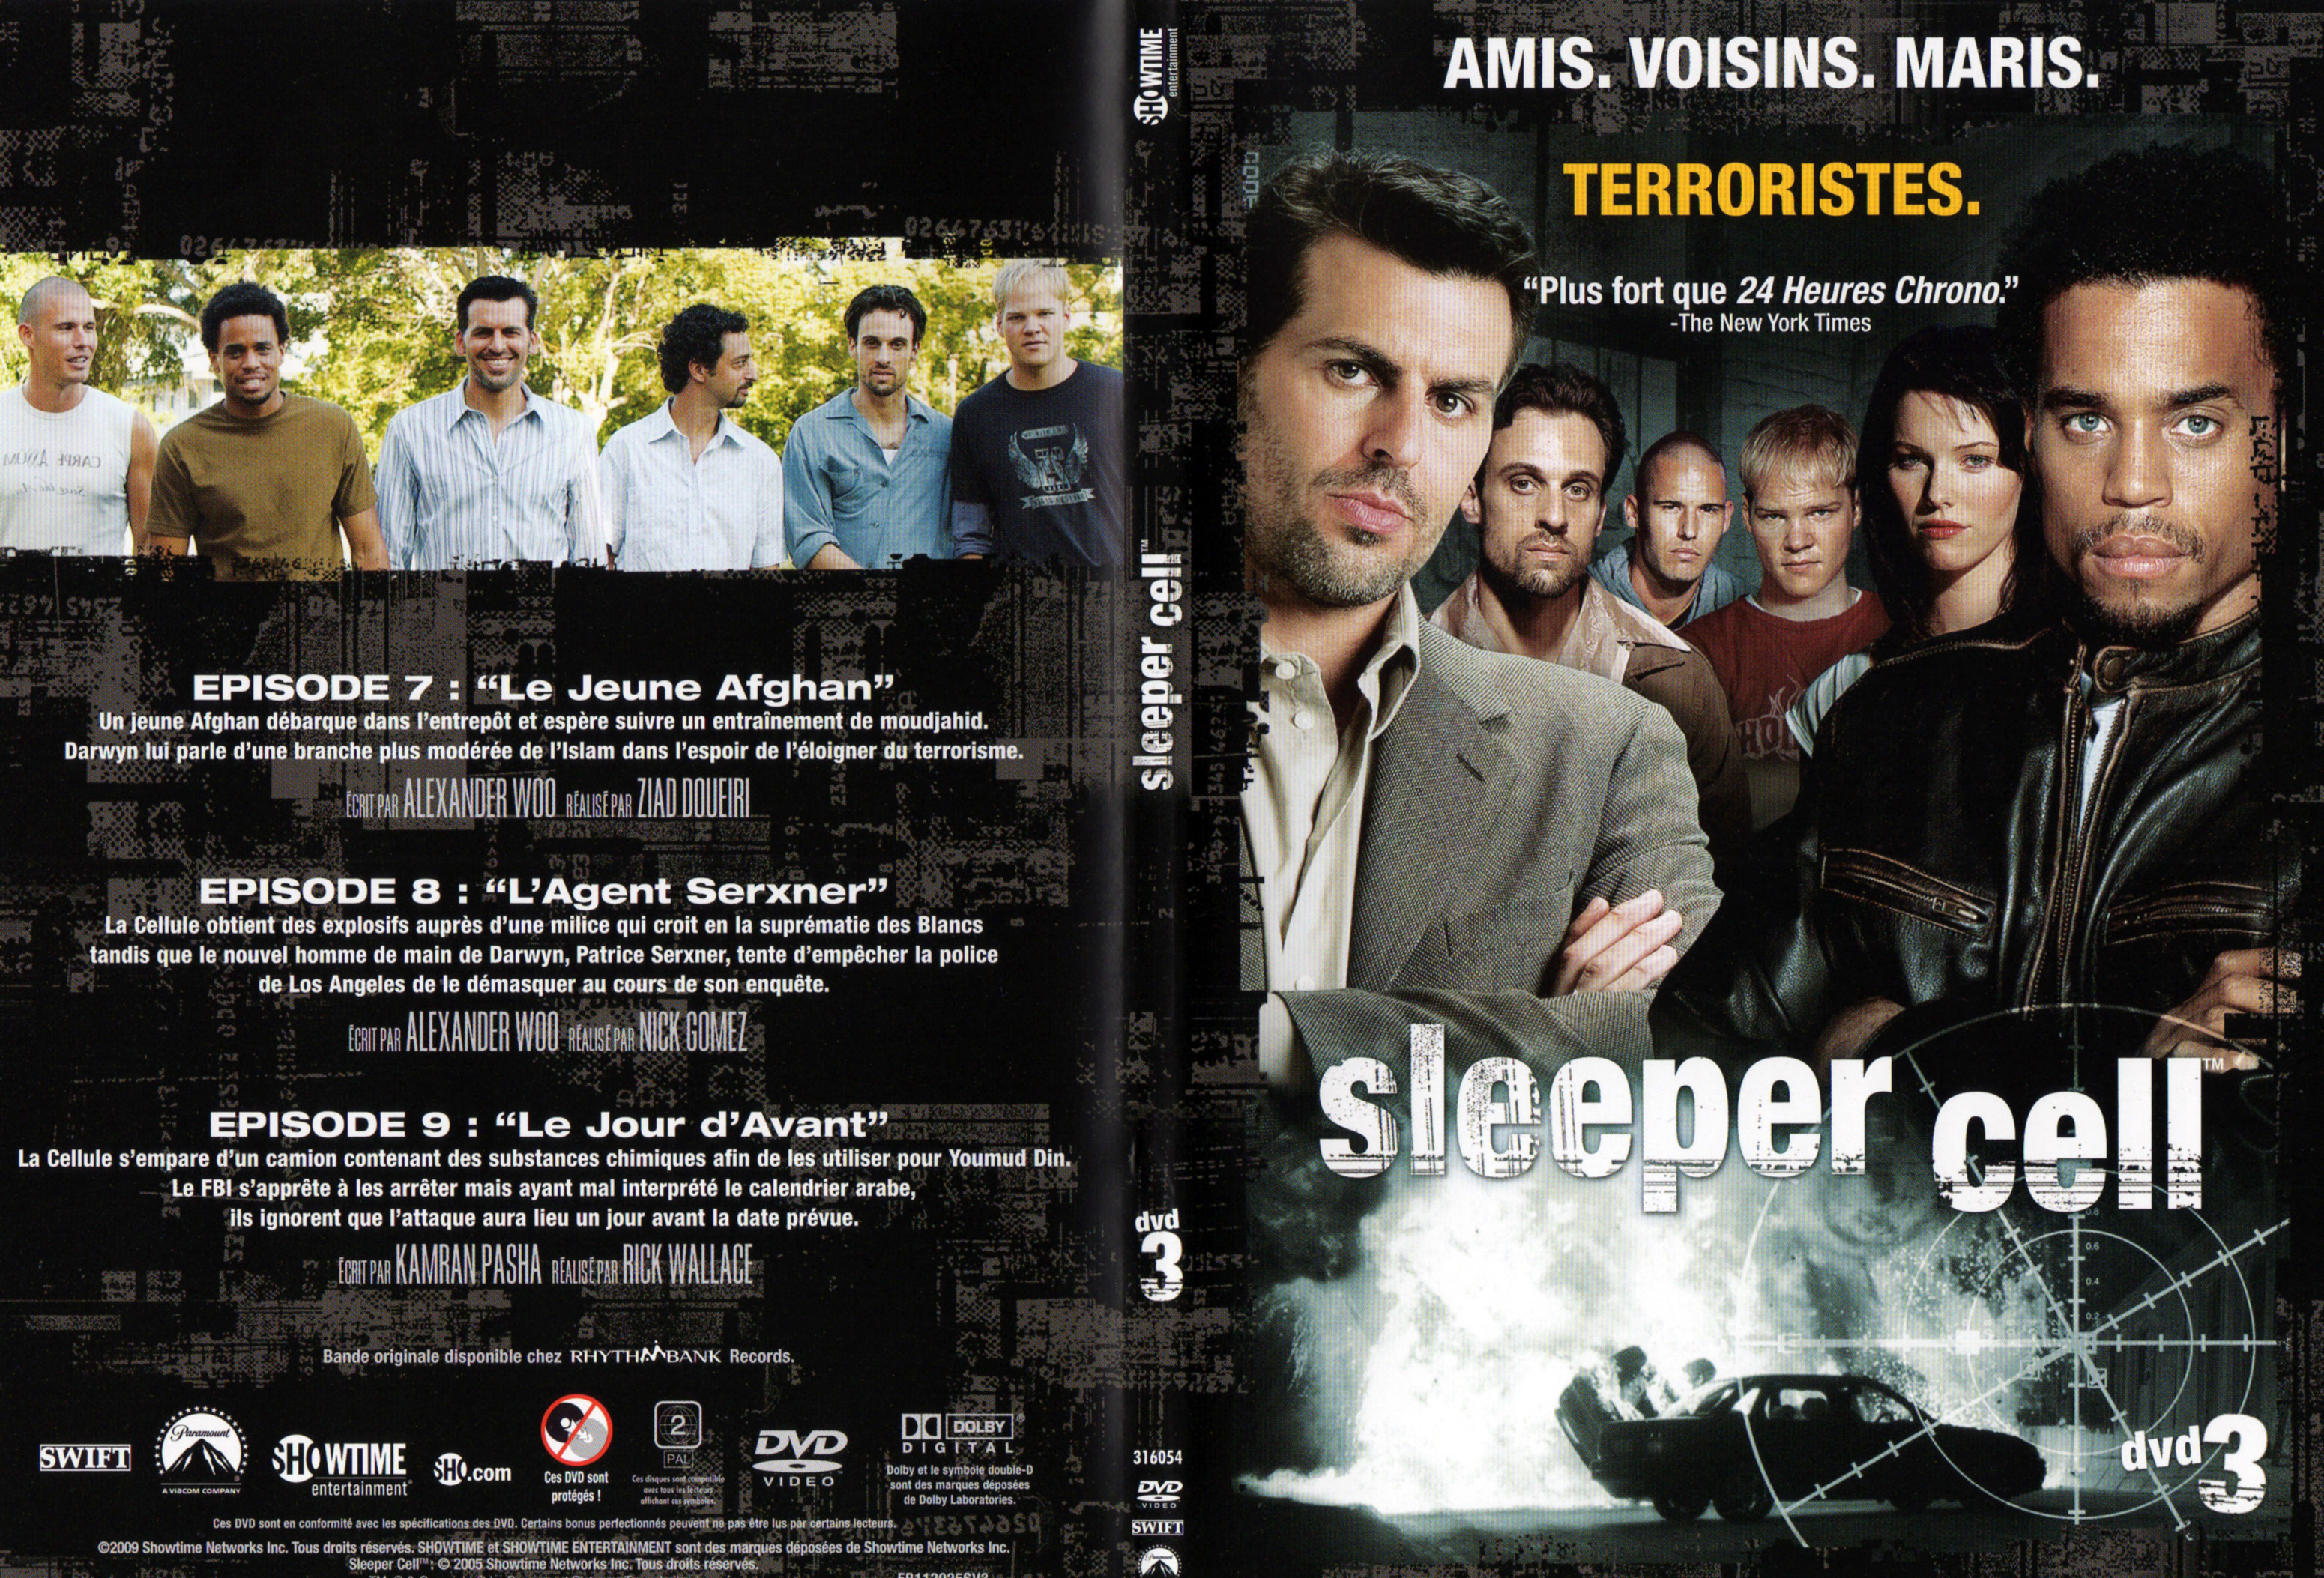 Jaquette DVD Sleeper cell Saison 1 DVD 3